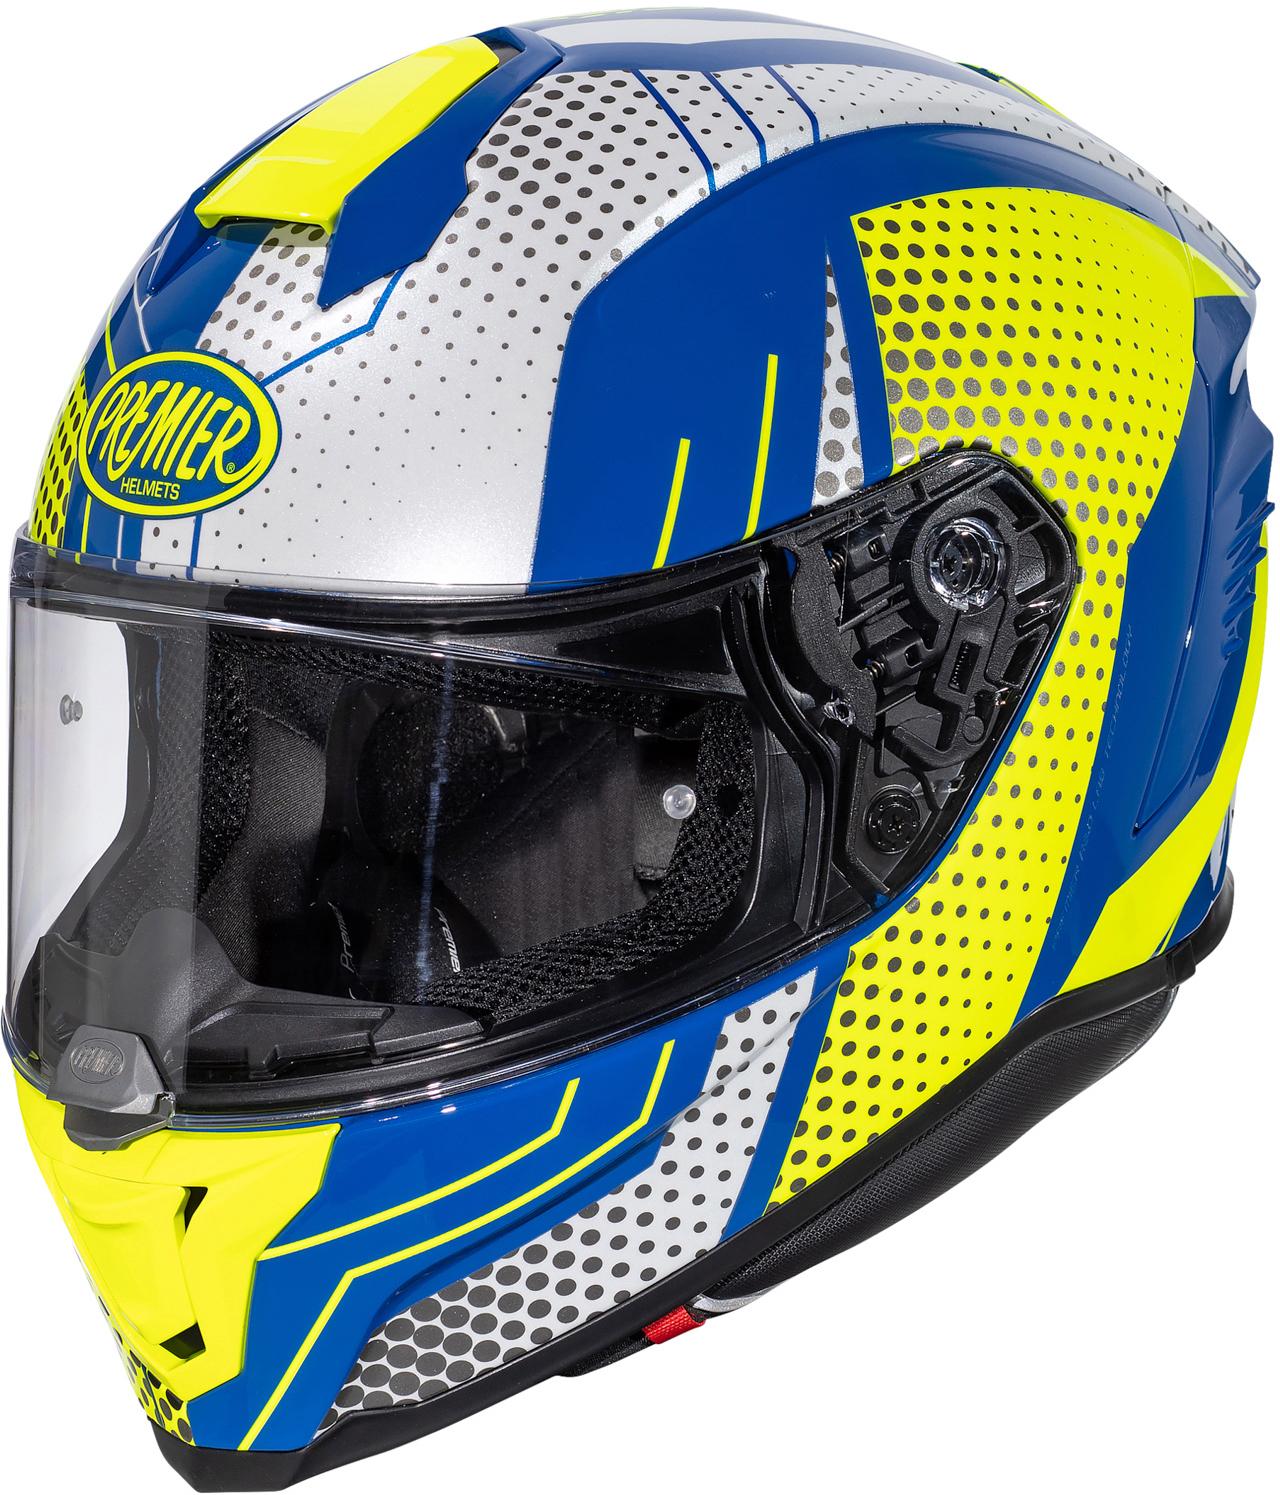 Premier Hyper Bp Full Face Motorcycle Helmet - White/Blue, S